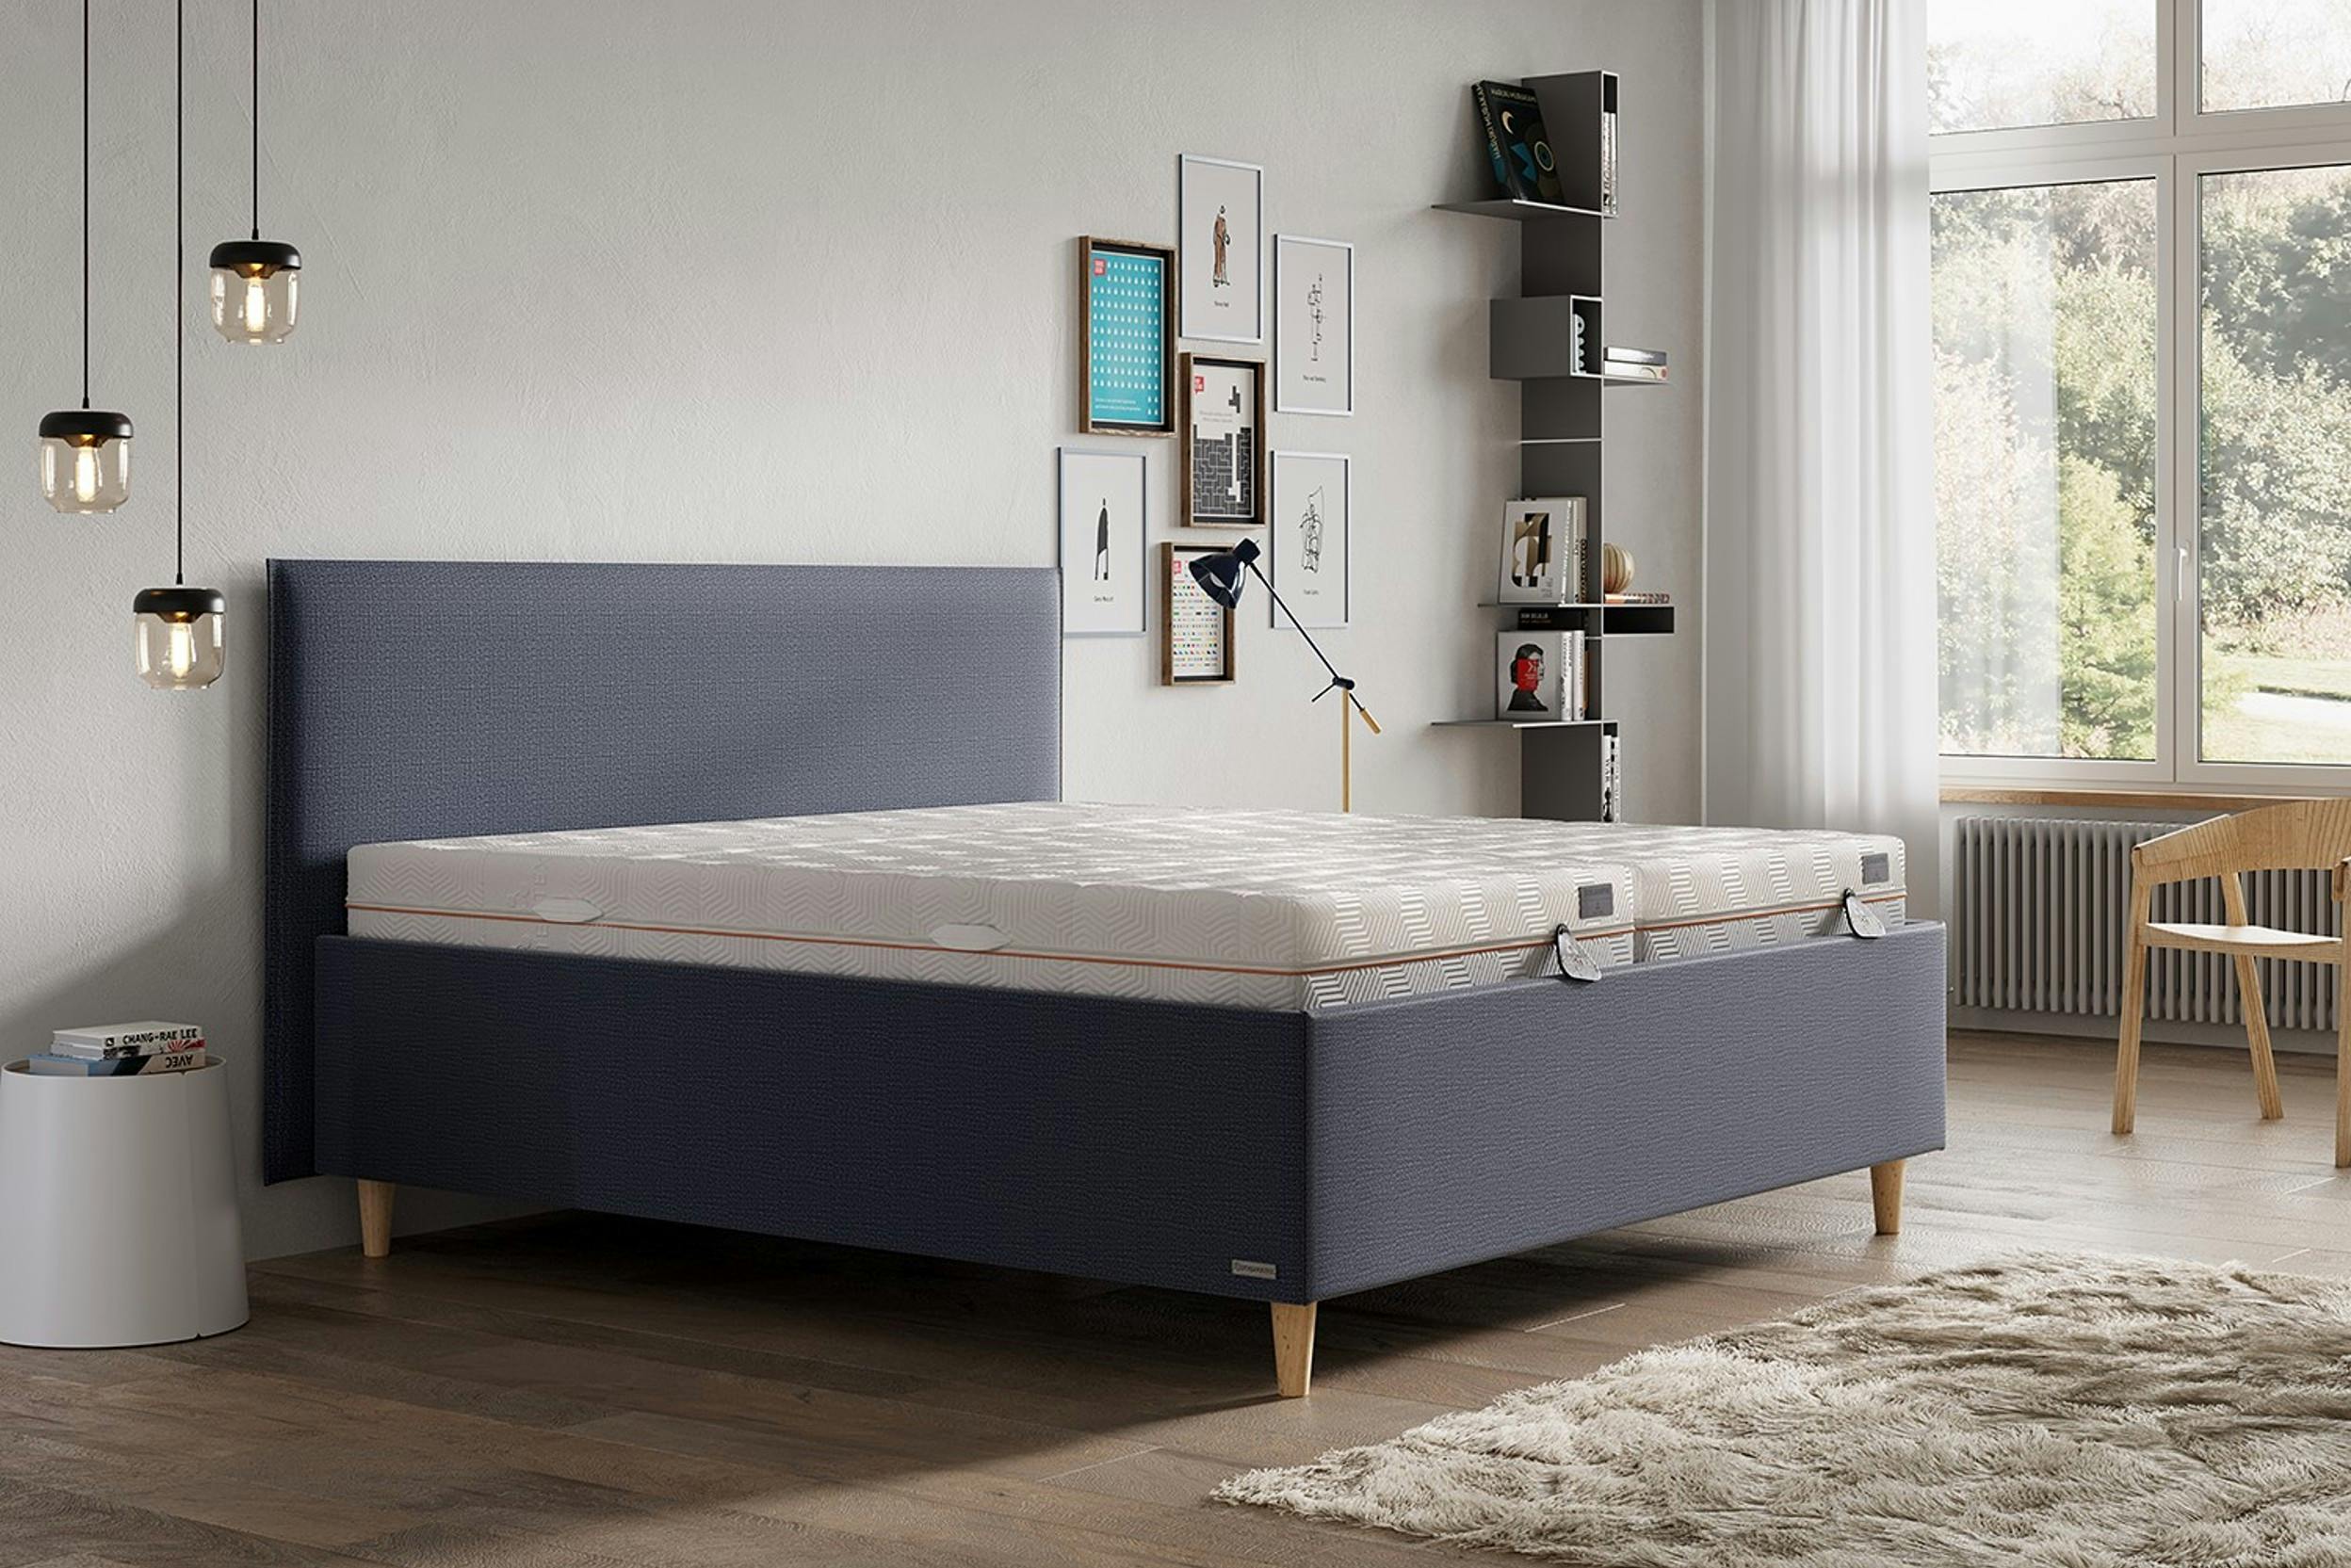 Schlafzimmer mit Pendellampen, Wandbildern und blaugrauem Polsterbett mit zwei Gelmatratzen